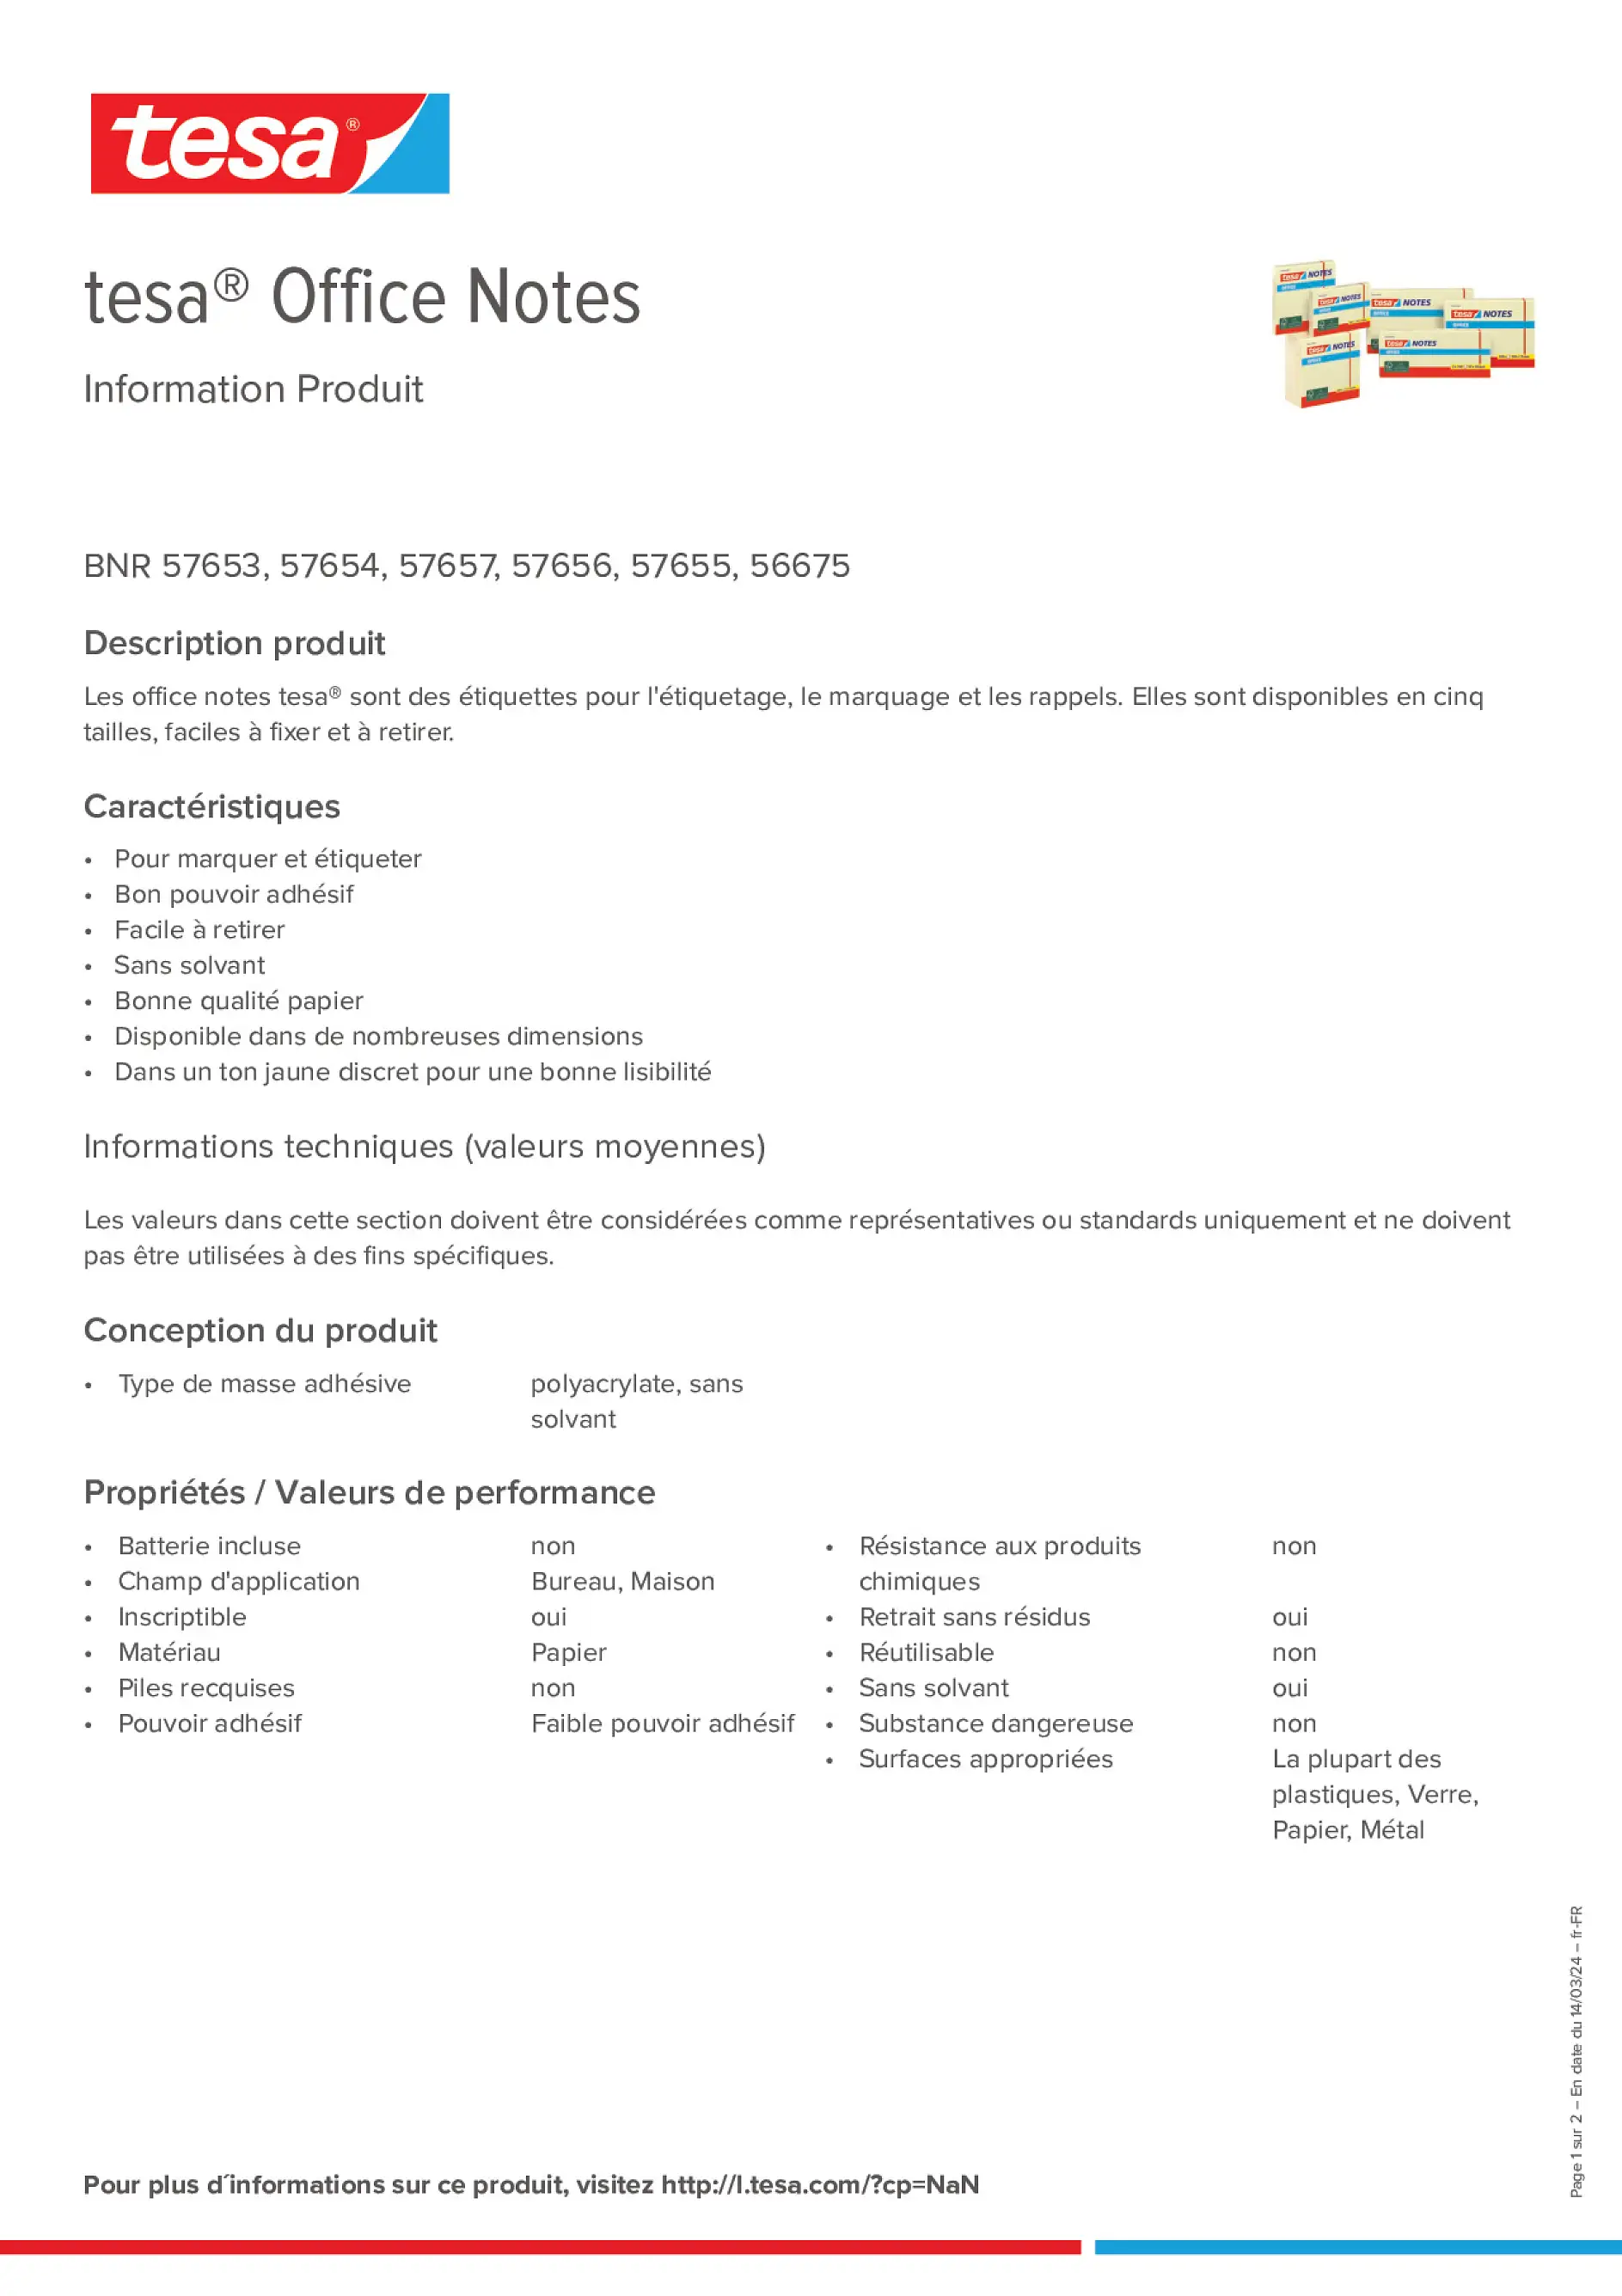 Product information_tesa® 57655_fr-FR